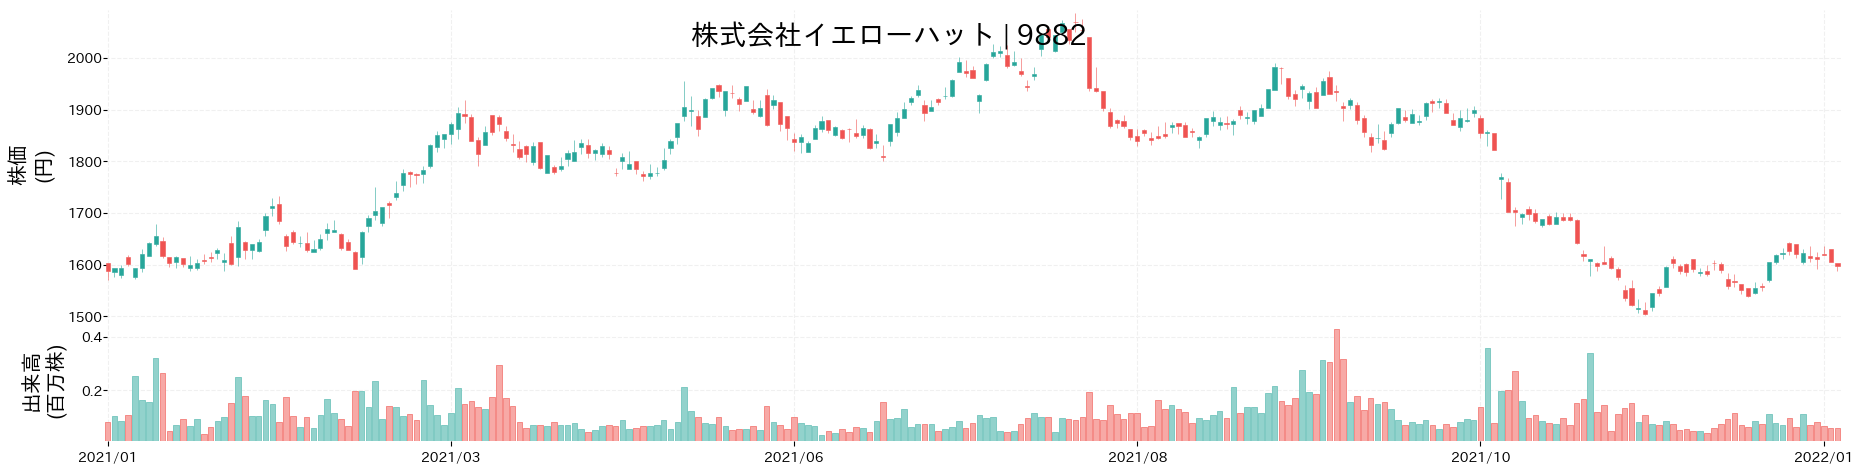 イエローハットの株価推移(2021)